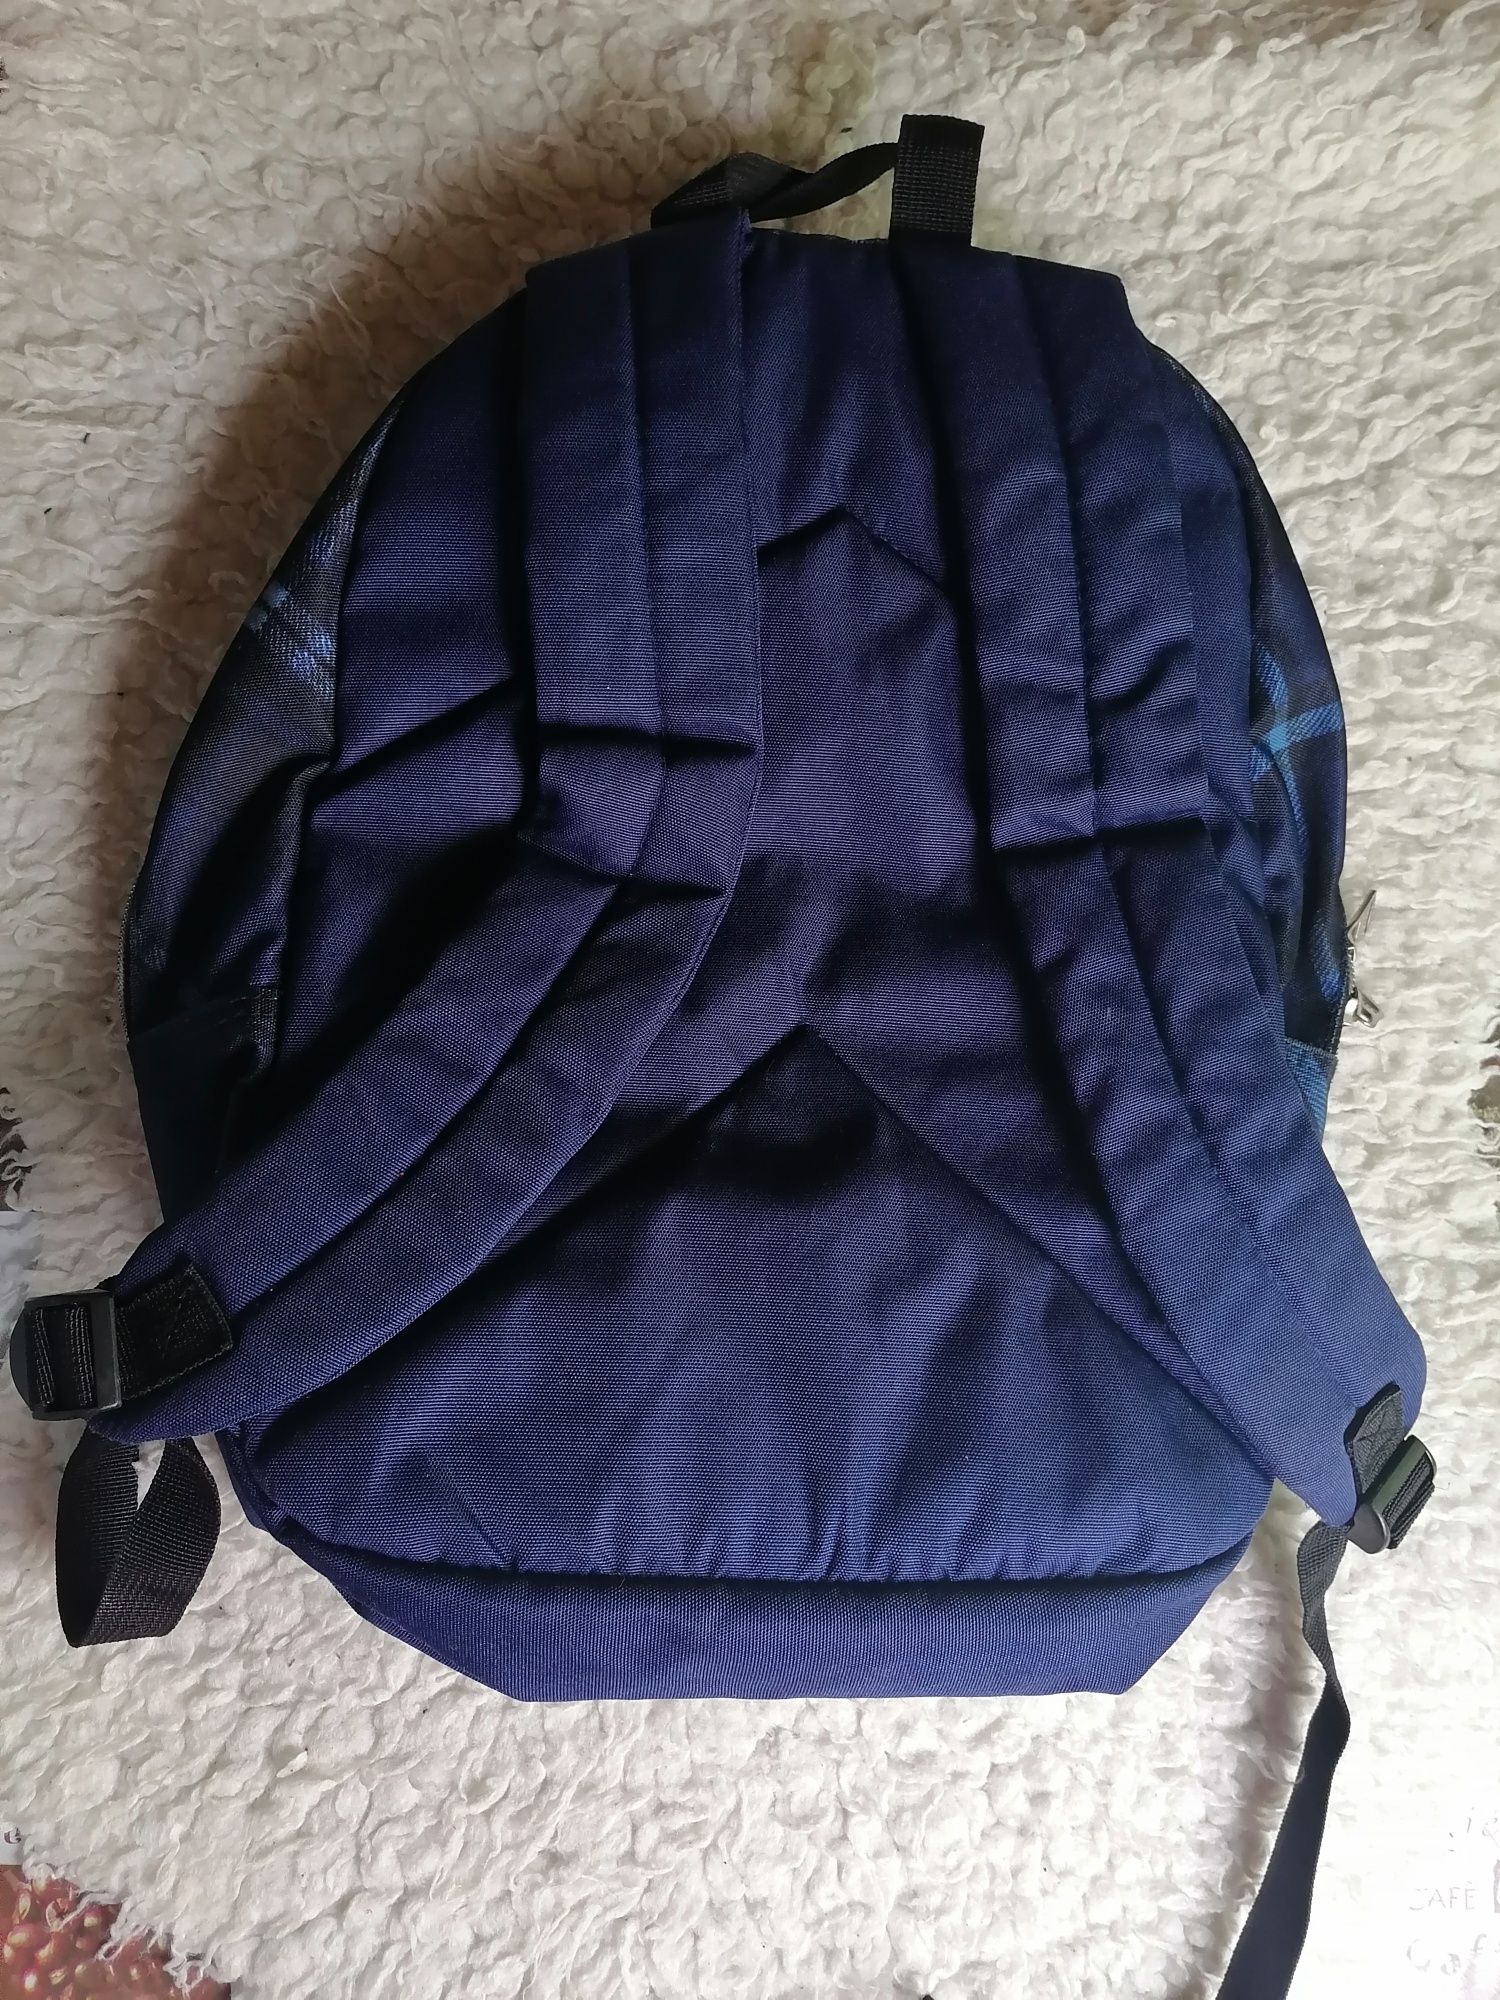 Bolsa/mochila azul Remelhe • OLX Portugal